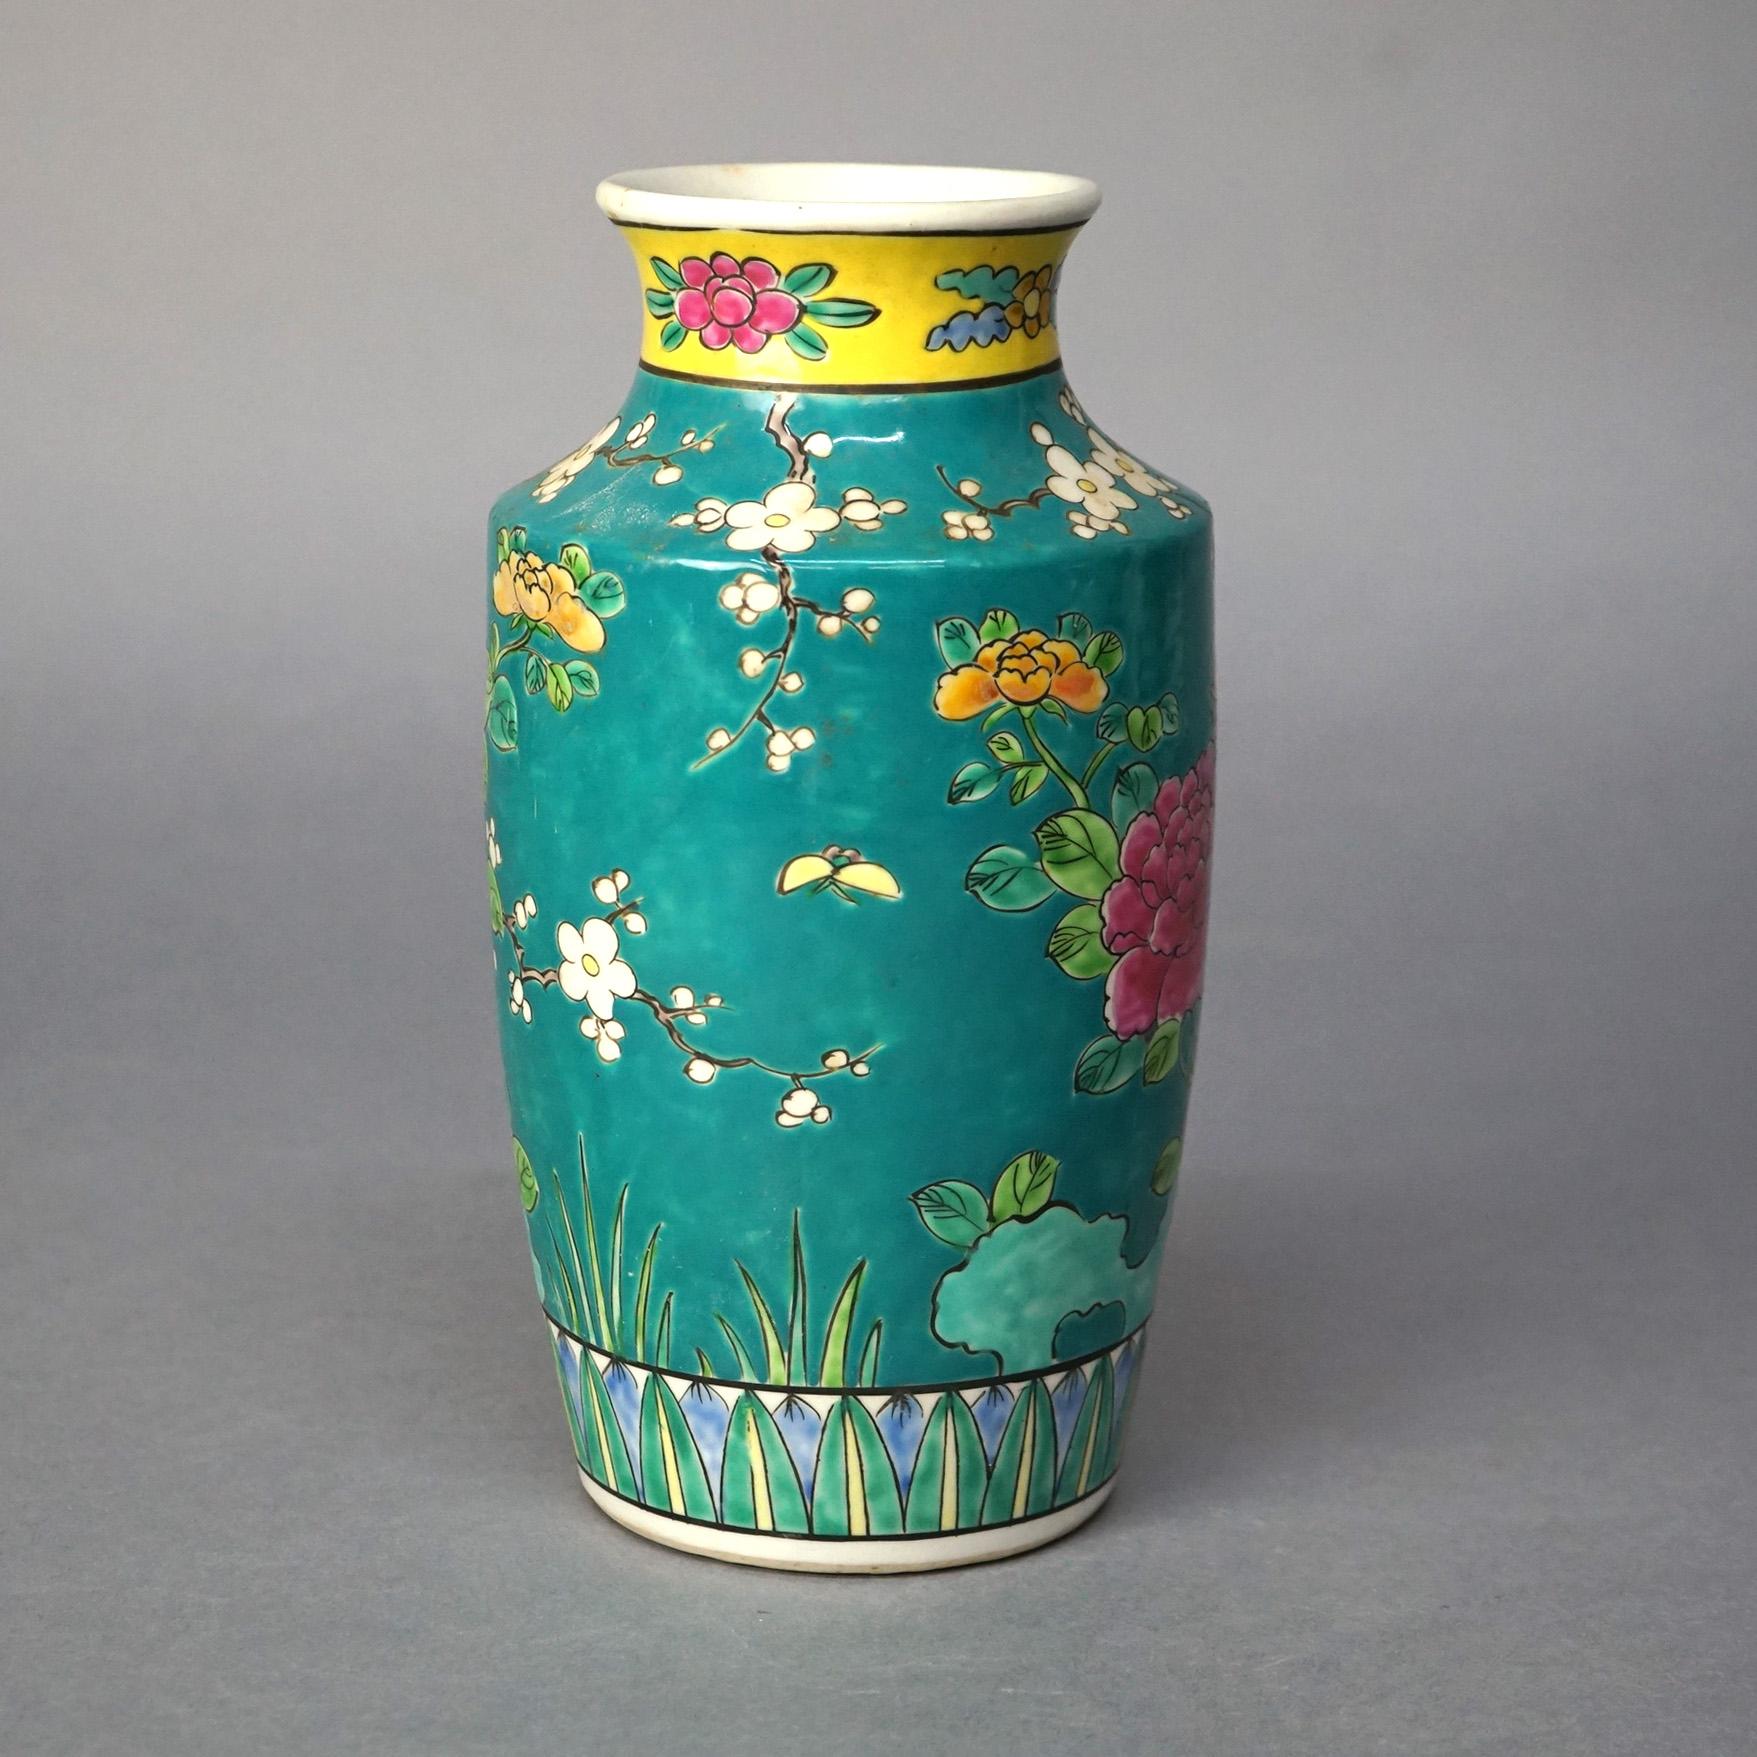 Antique Japanese Porcelain Enameled Garden Scene Vase with Birds & Flowers C1910 2